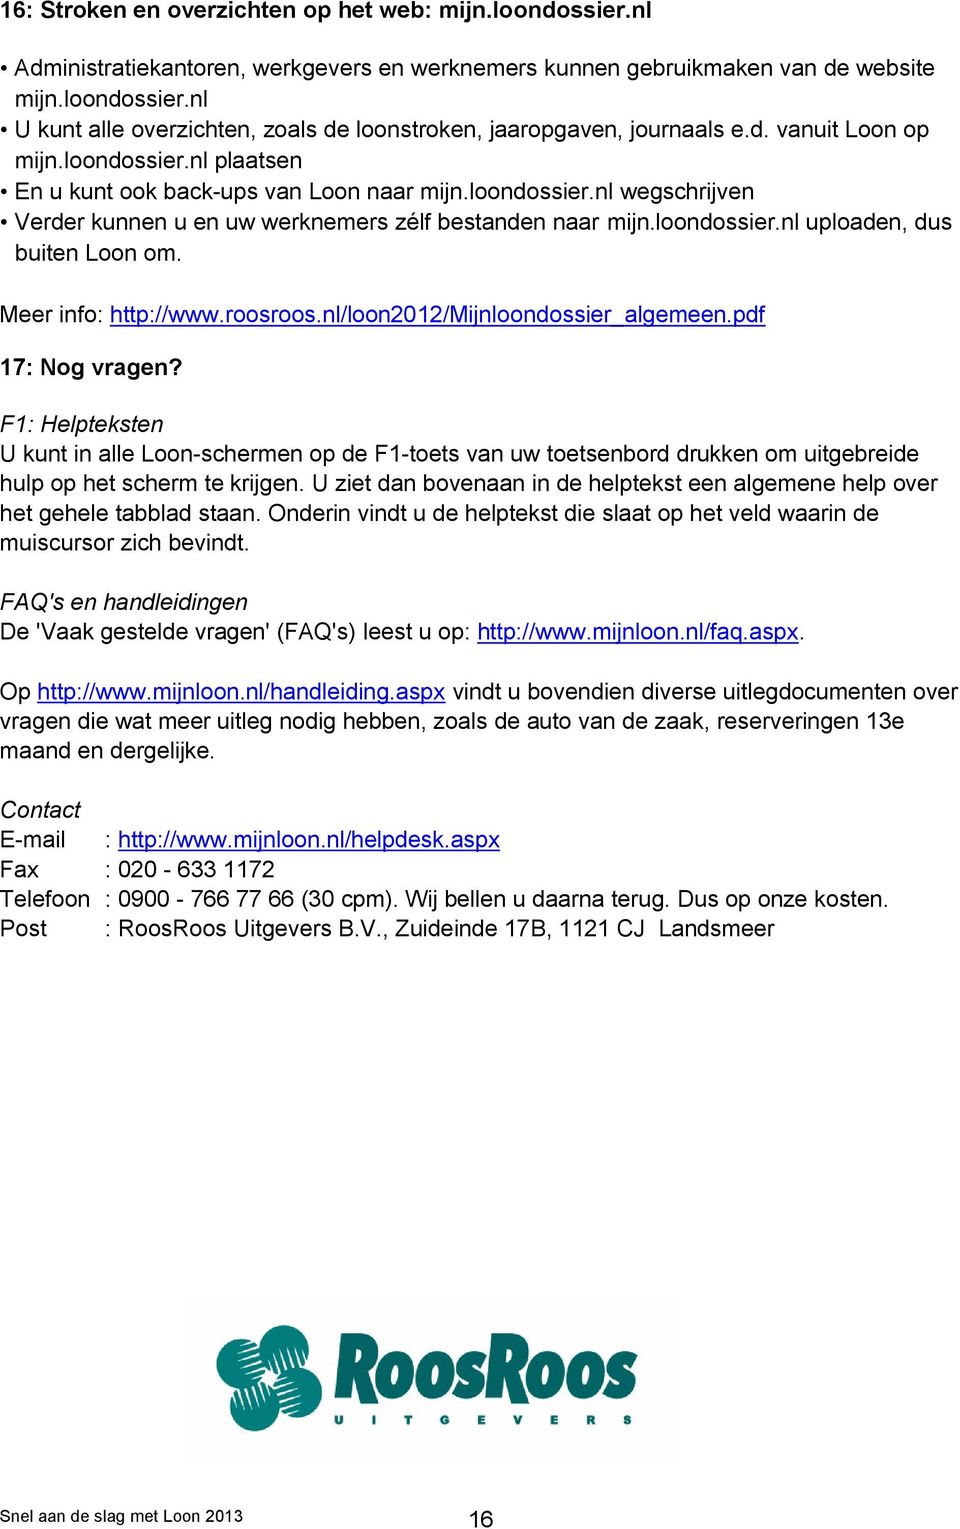 Meer info: http://www.roosroos.nl/loon2012/mijnloondossier_algemeen.pdf 17: Nog vragen?